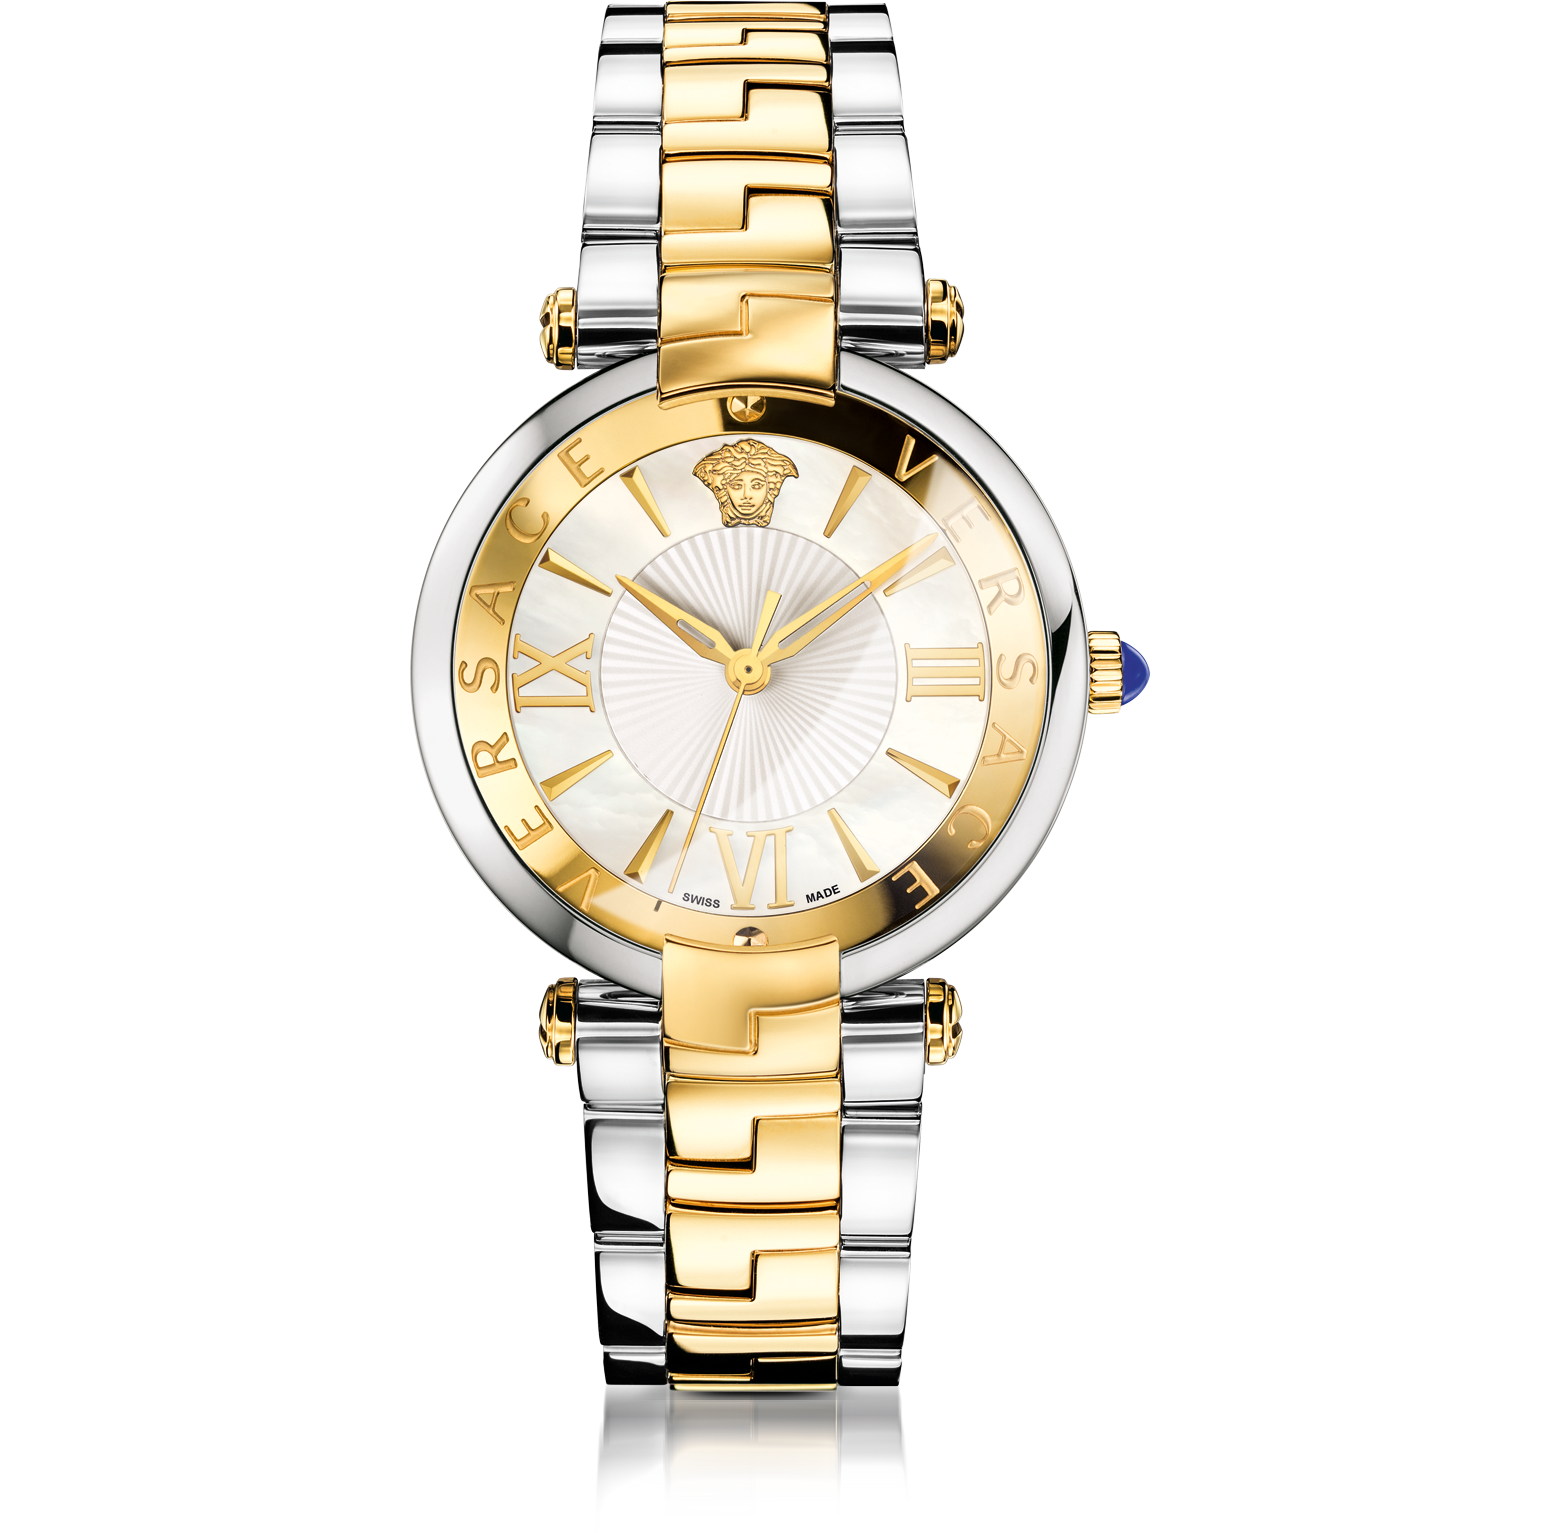 white versace women's watch